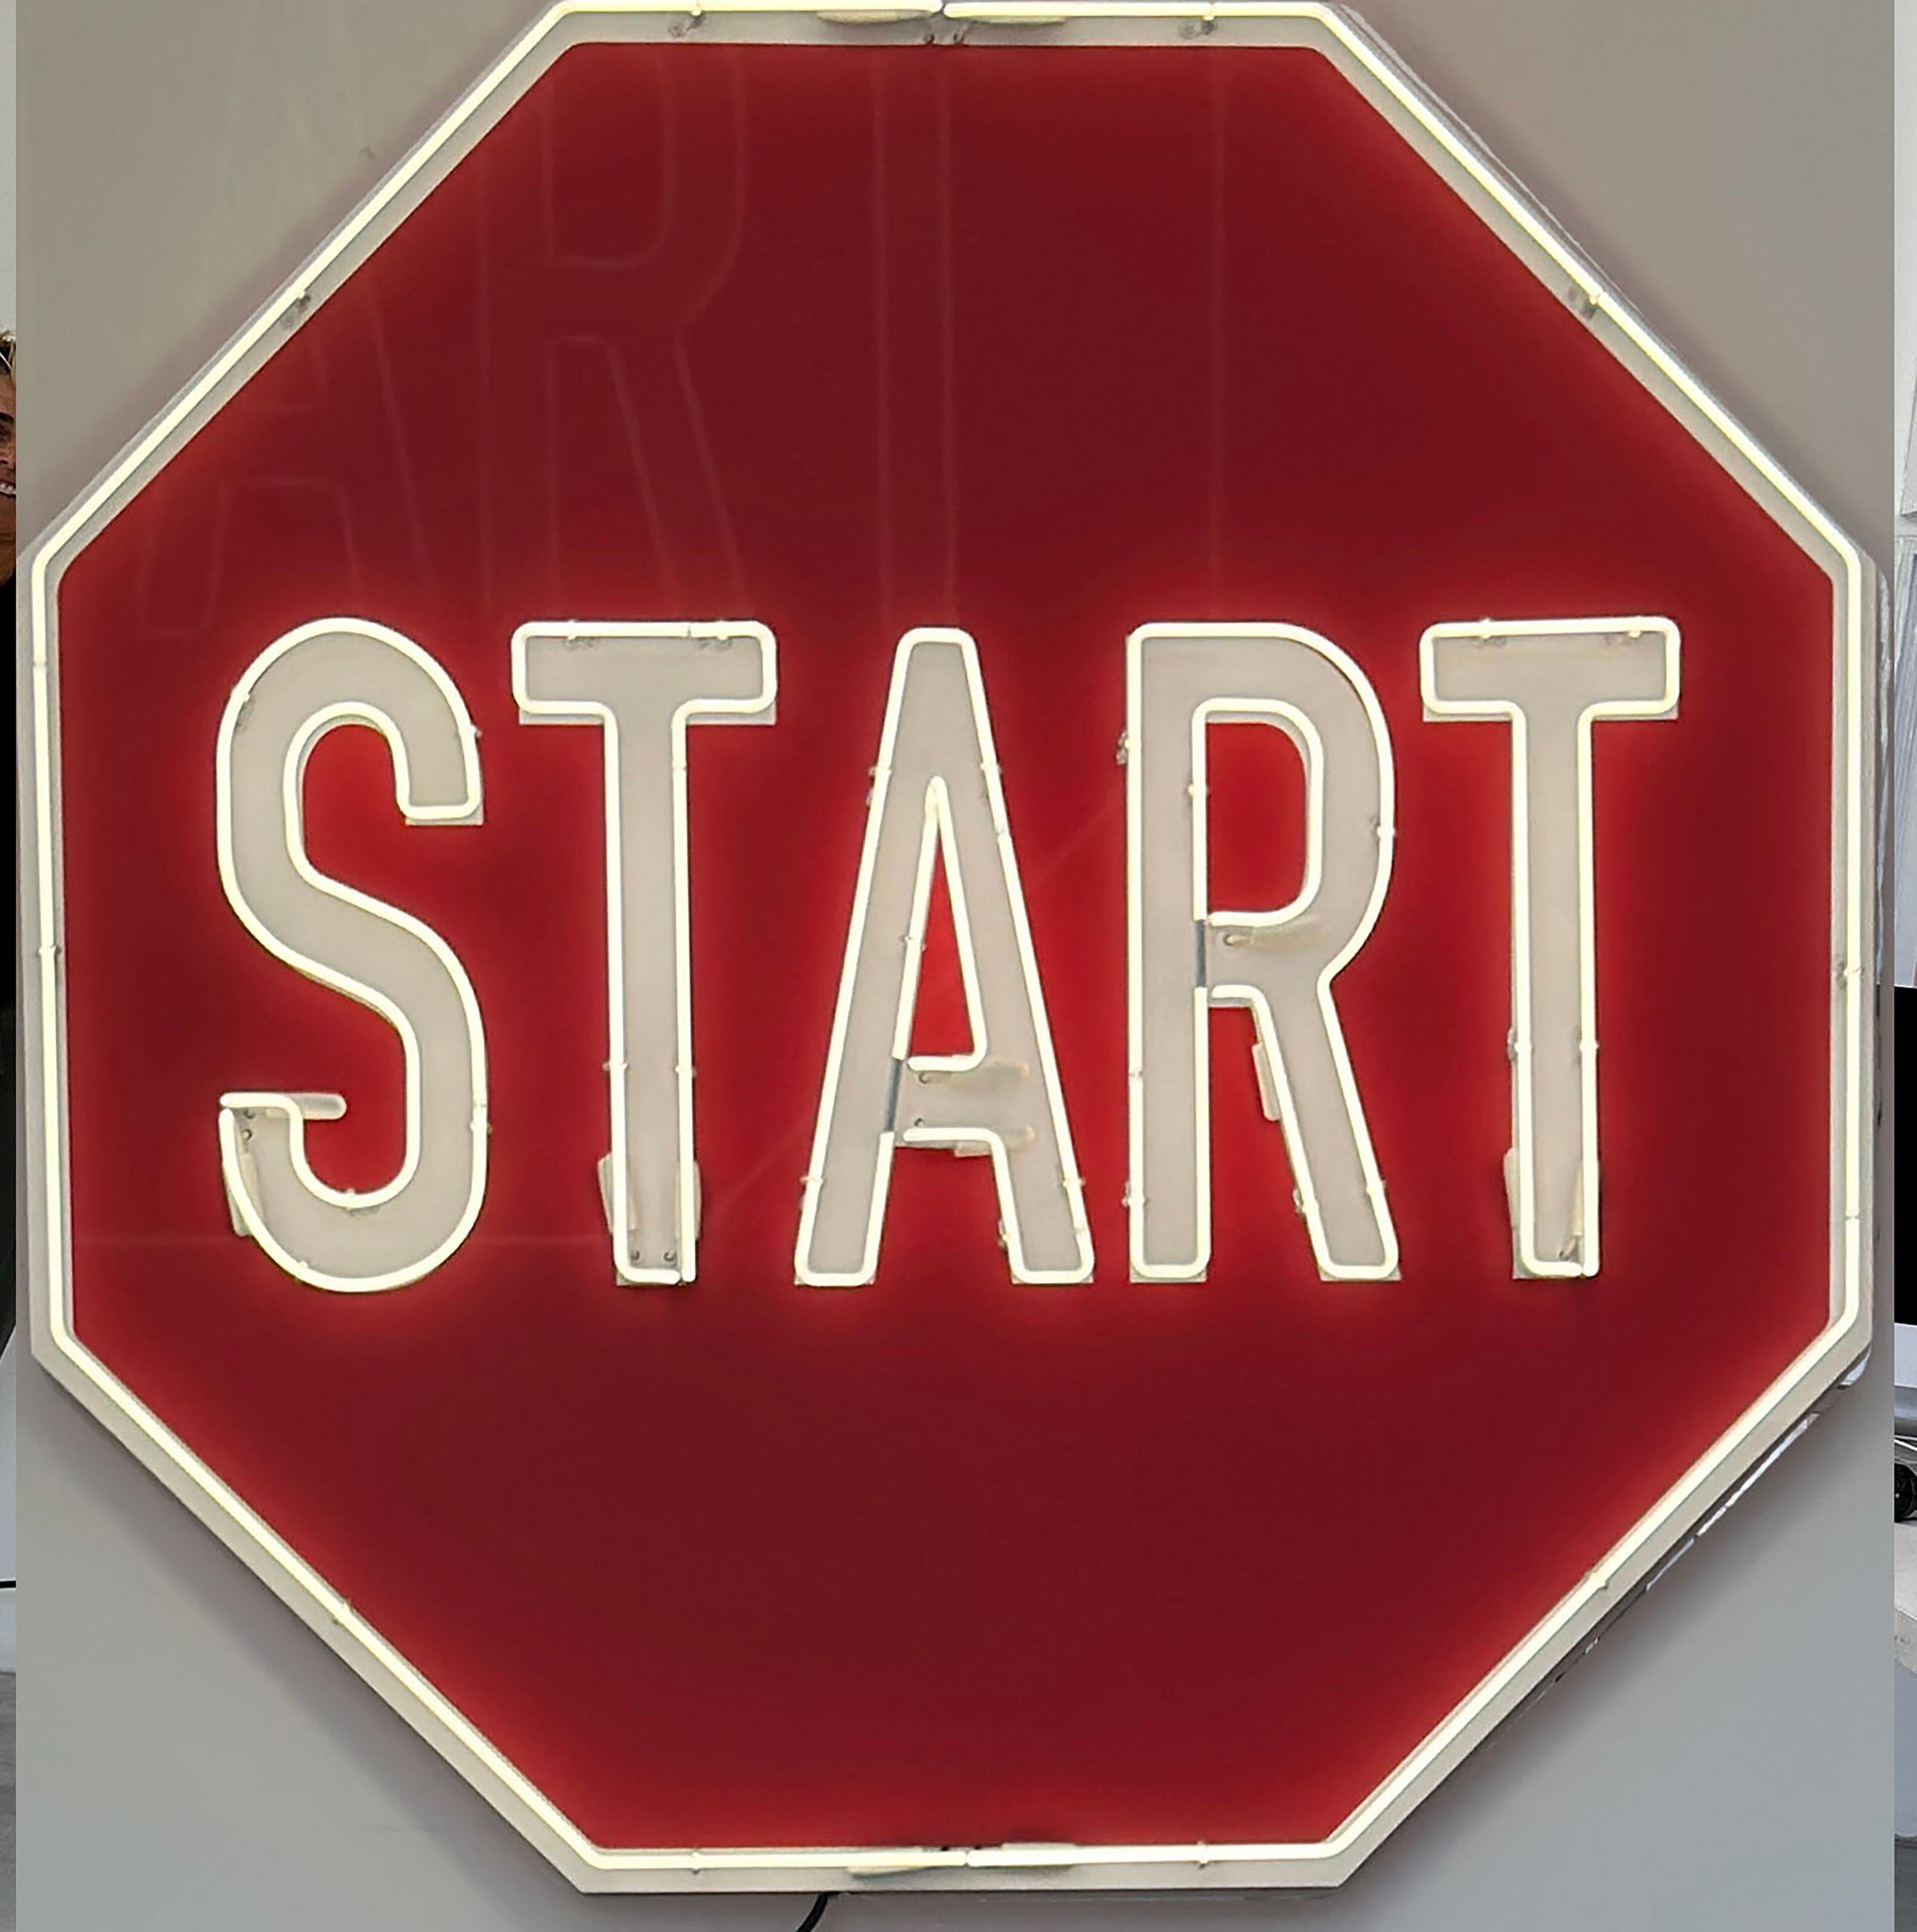 "Start" - Neon Contemporary Street Sign Sculpture - Mixed Media Art by Scott Froschauer